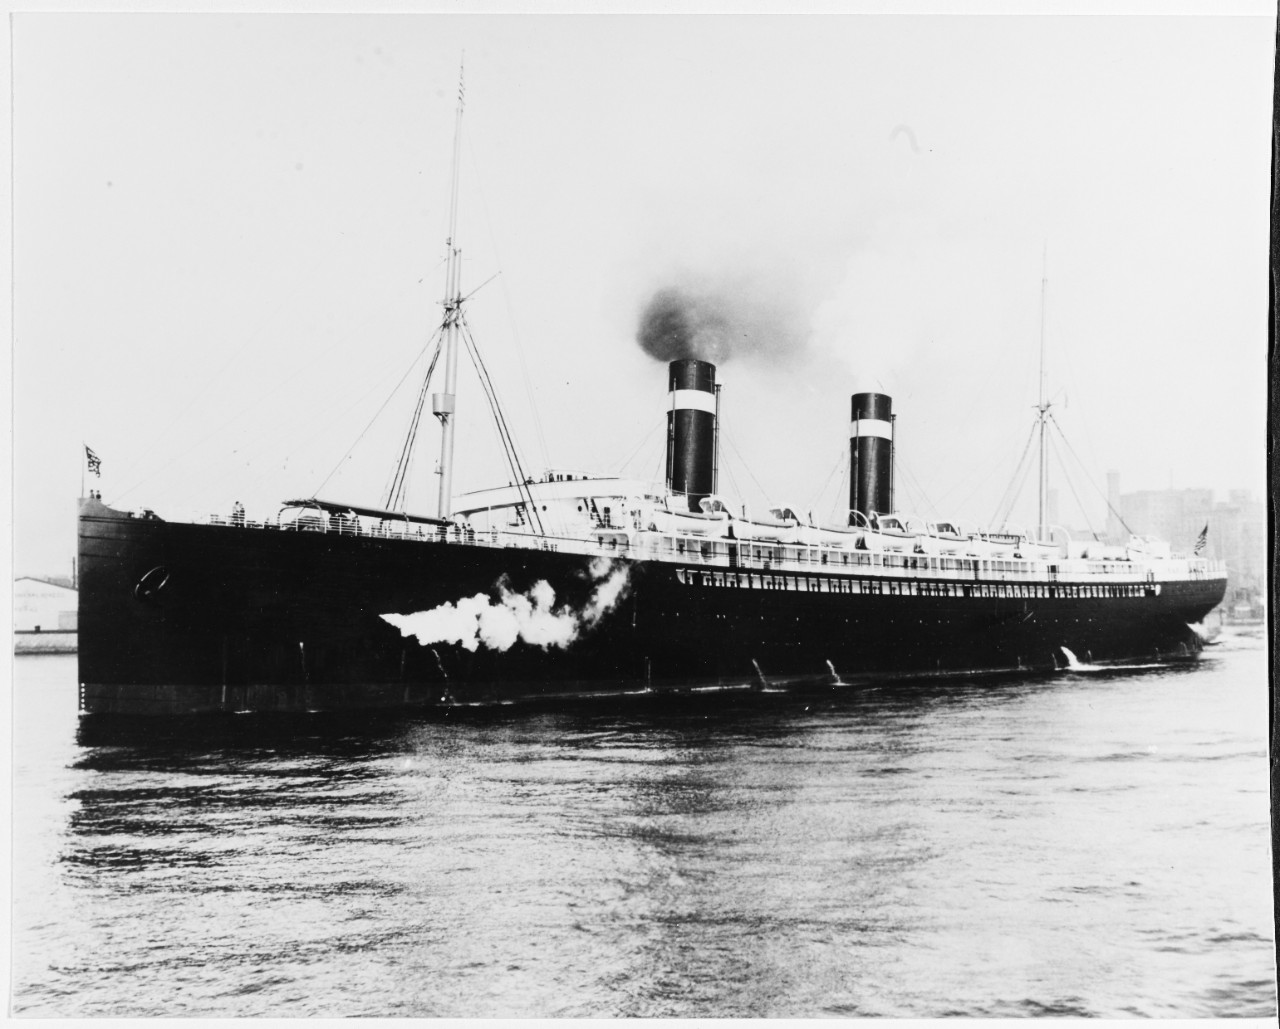 ST. PAUL (U.S. passenger liner, 1895)